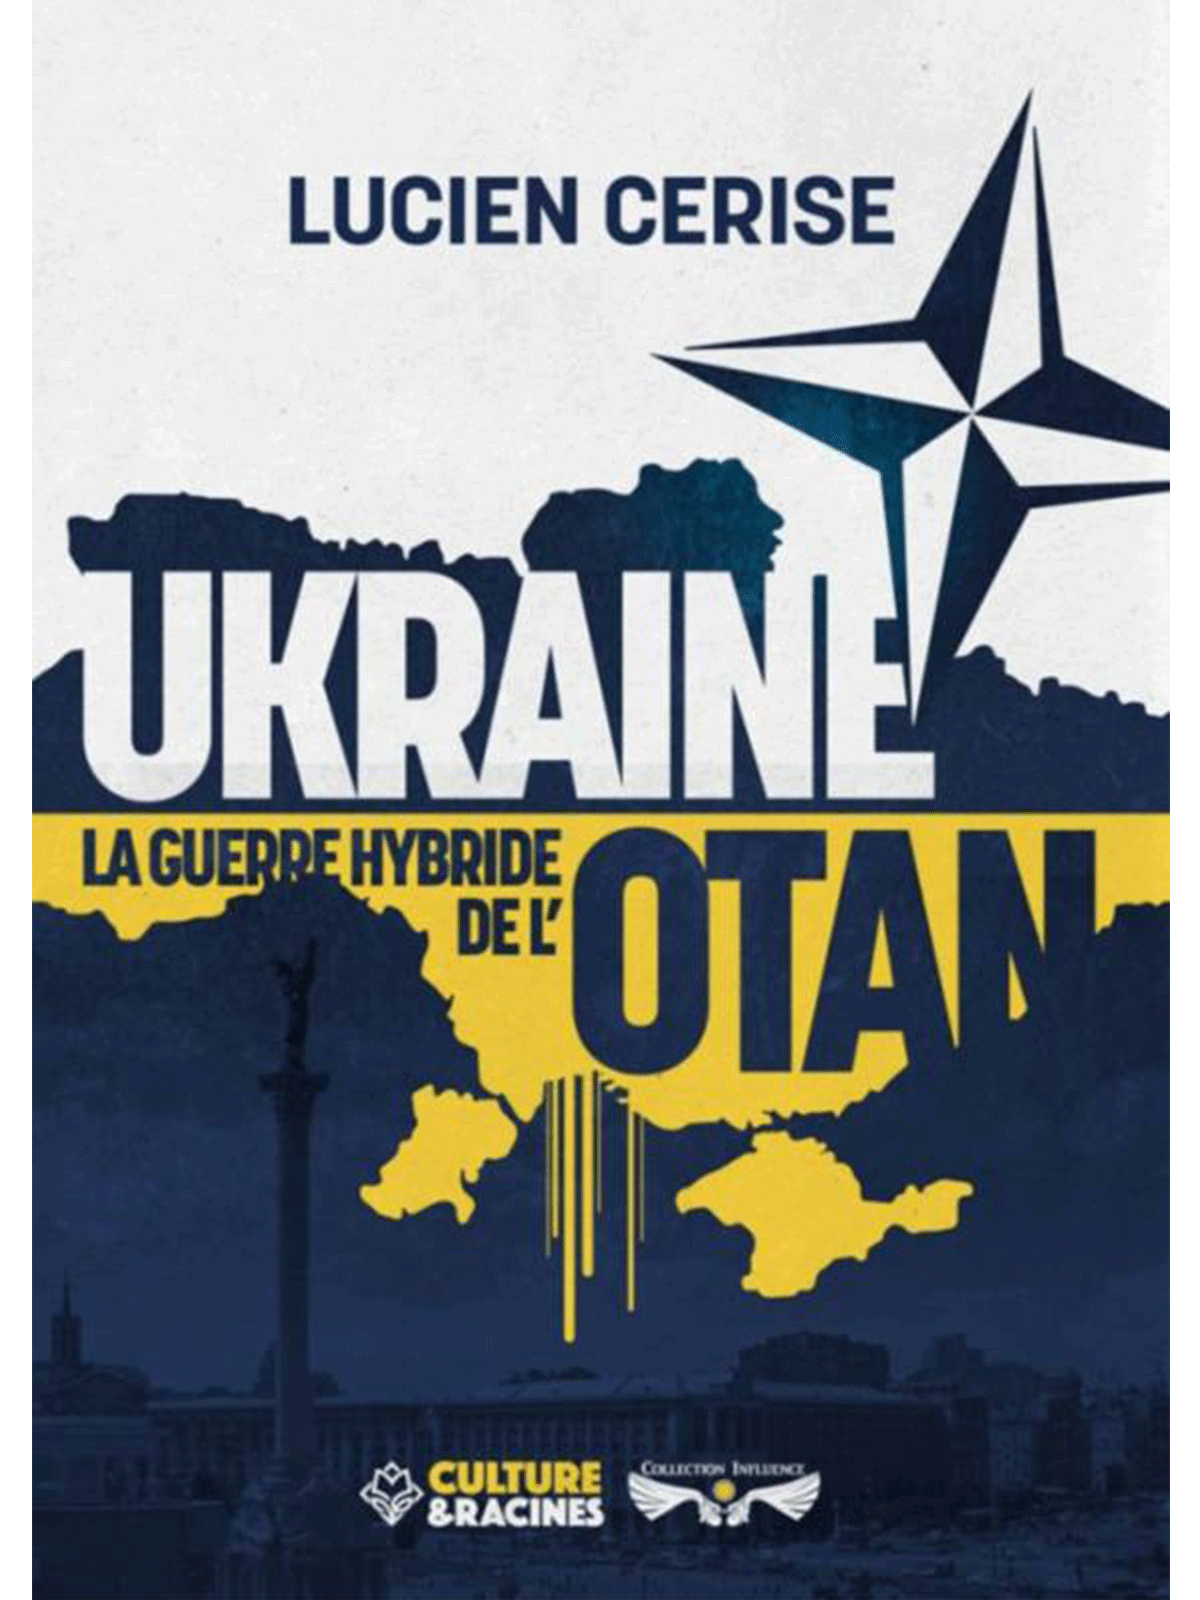 Lucien Cerise : UKRAINE, la guerre hybride de l’OTAN